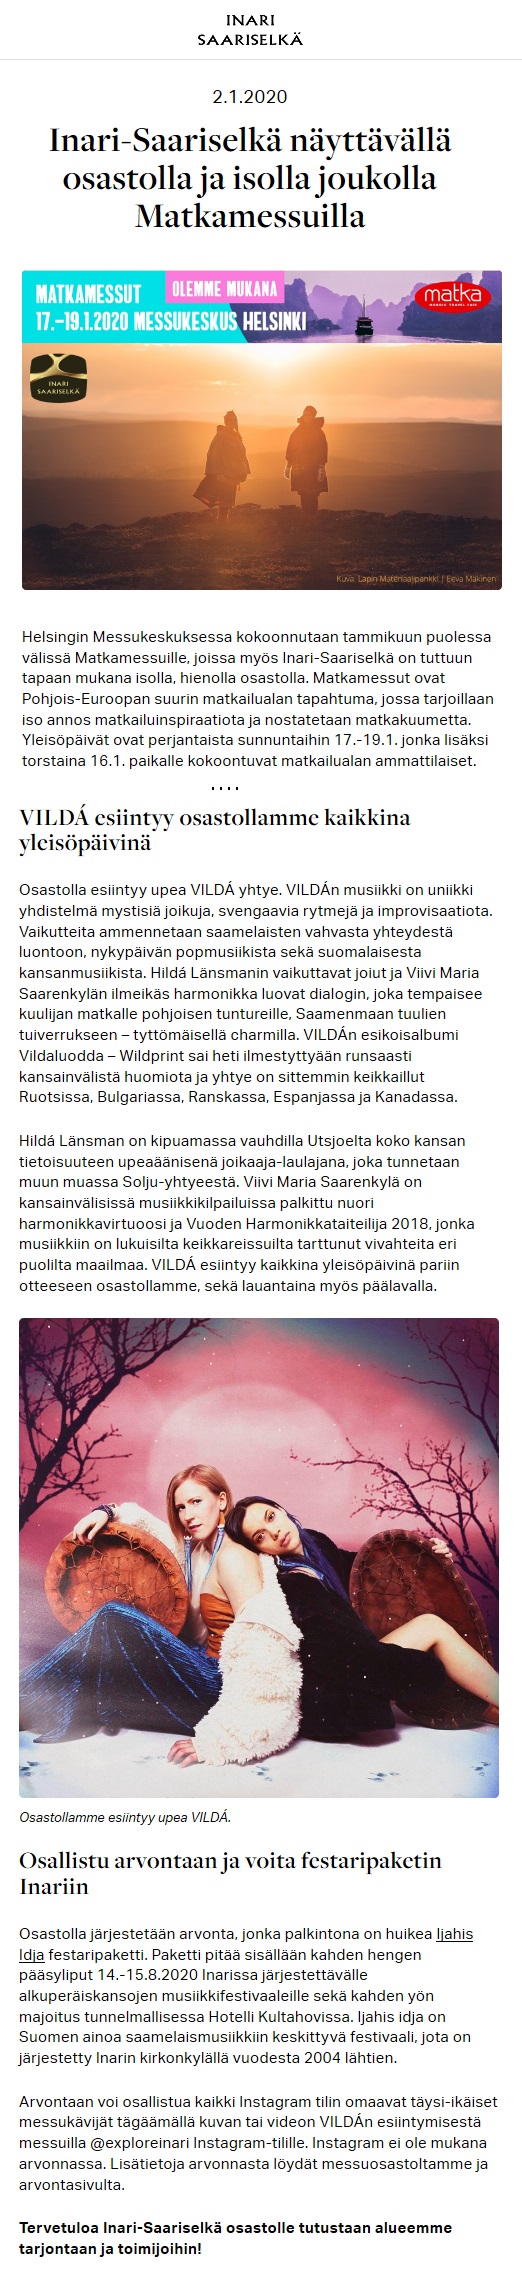 Inari-Saariselkä (Finland), 2.1.2020